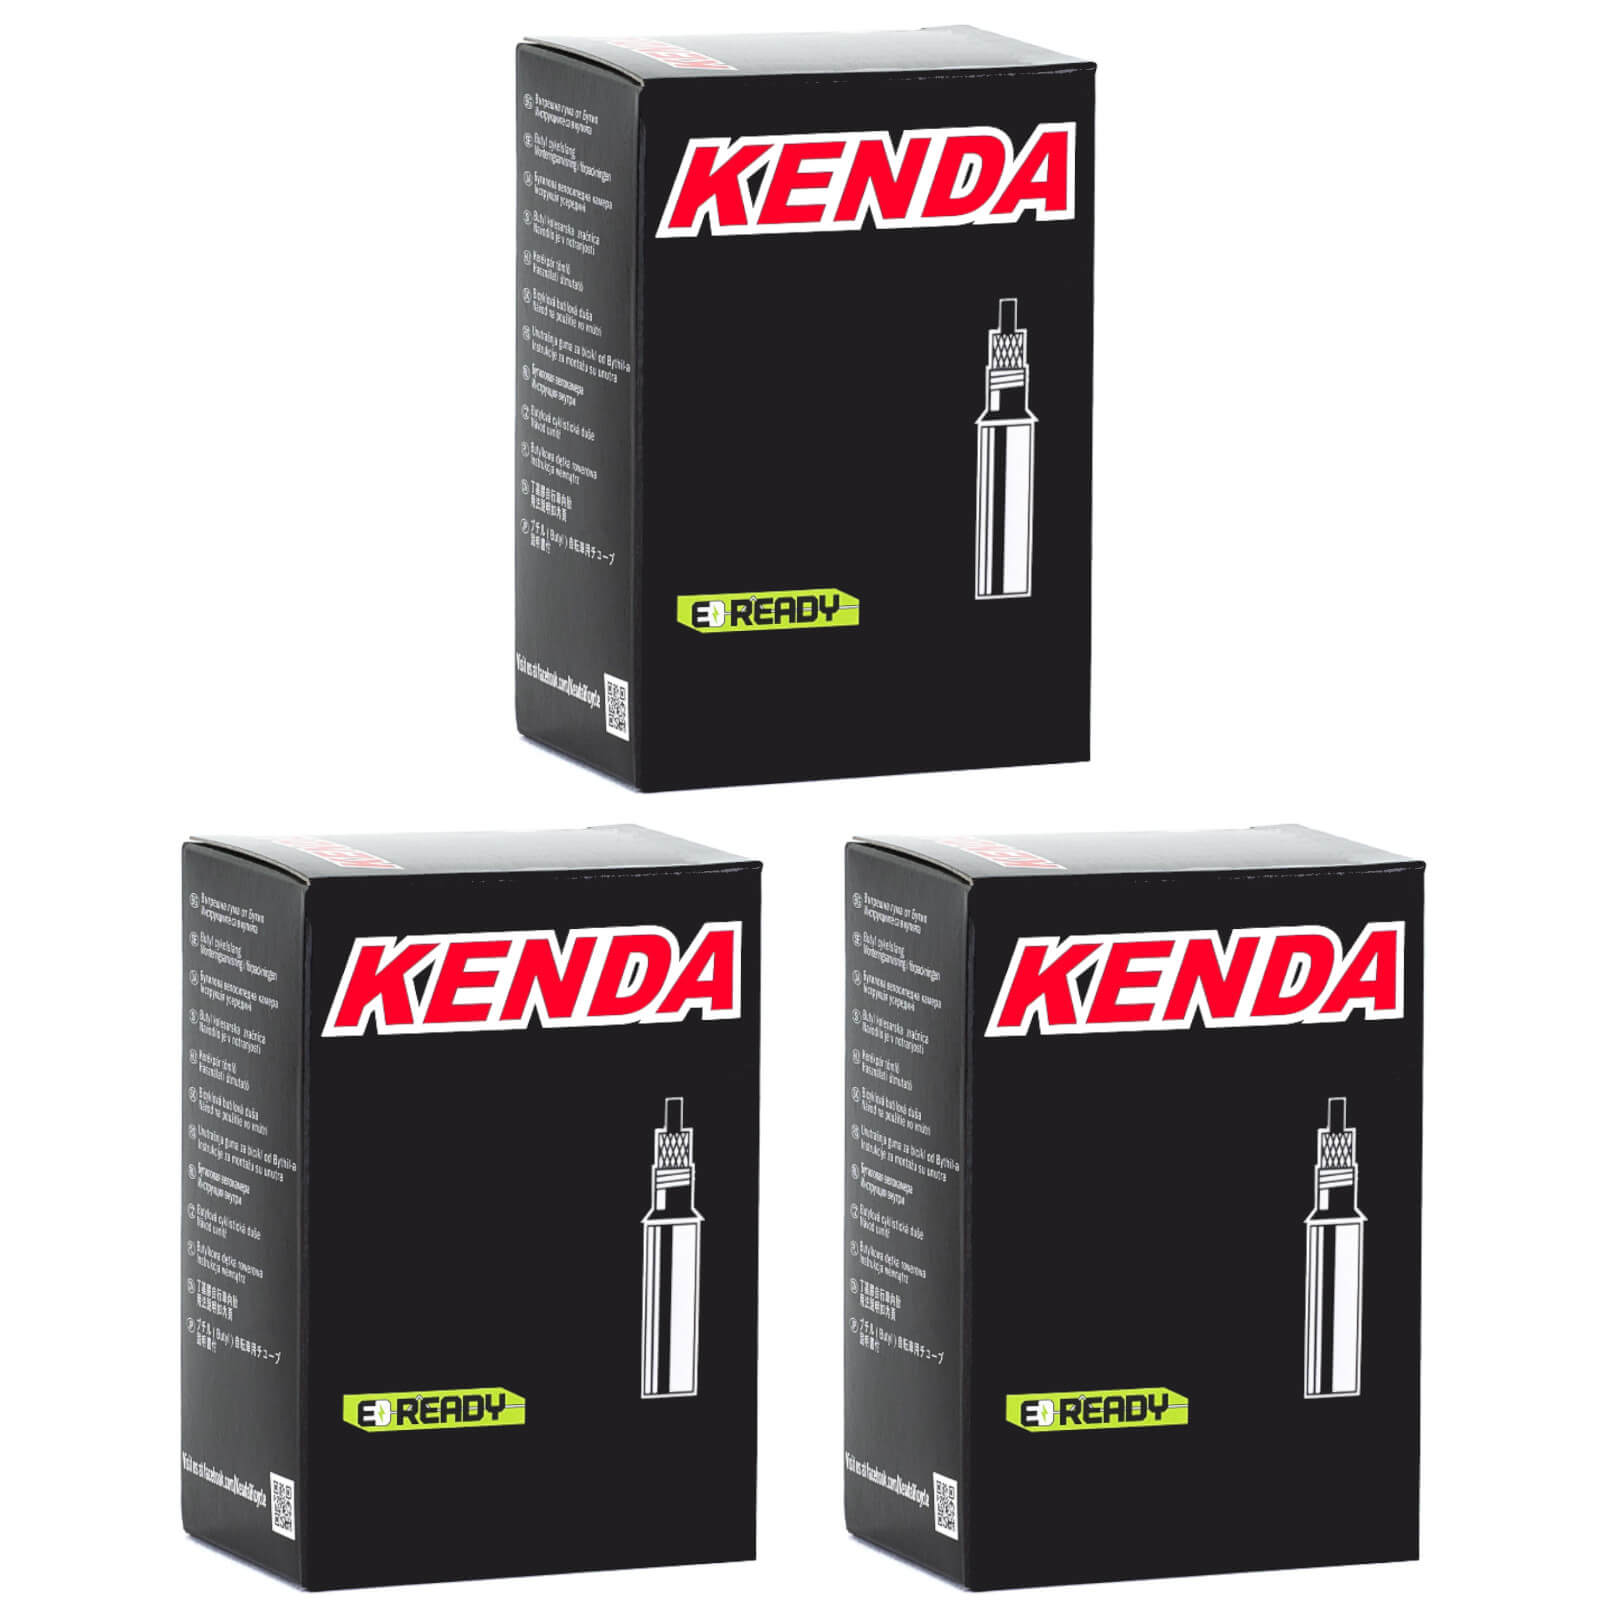 Kenda 700x45-50c 700c Presta Valve Bike Inner Tube Pack of 3